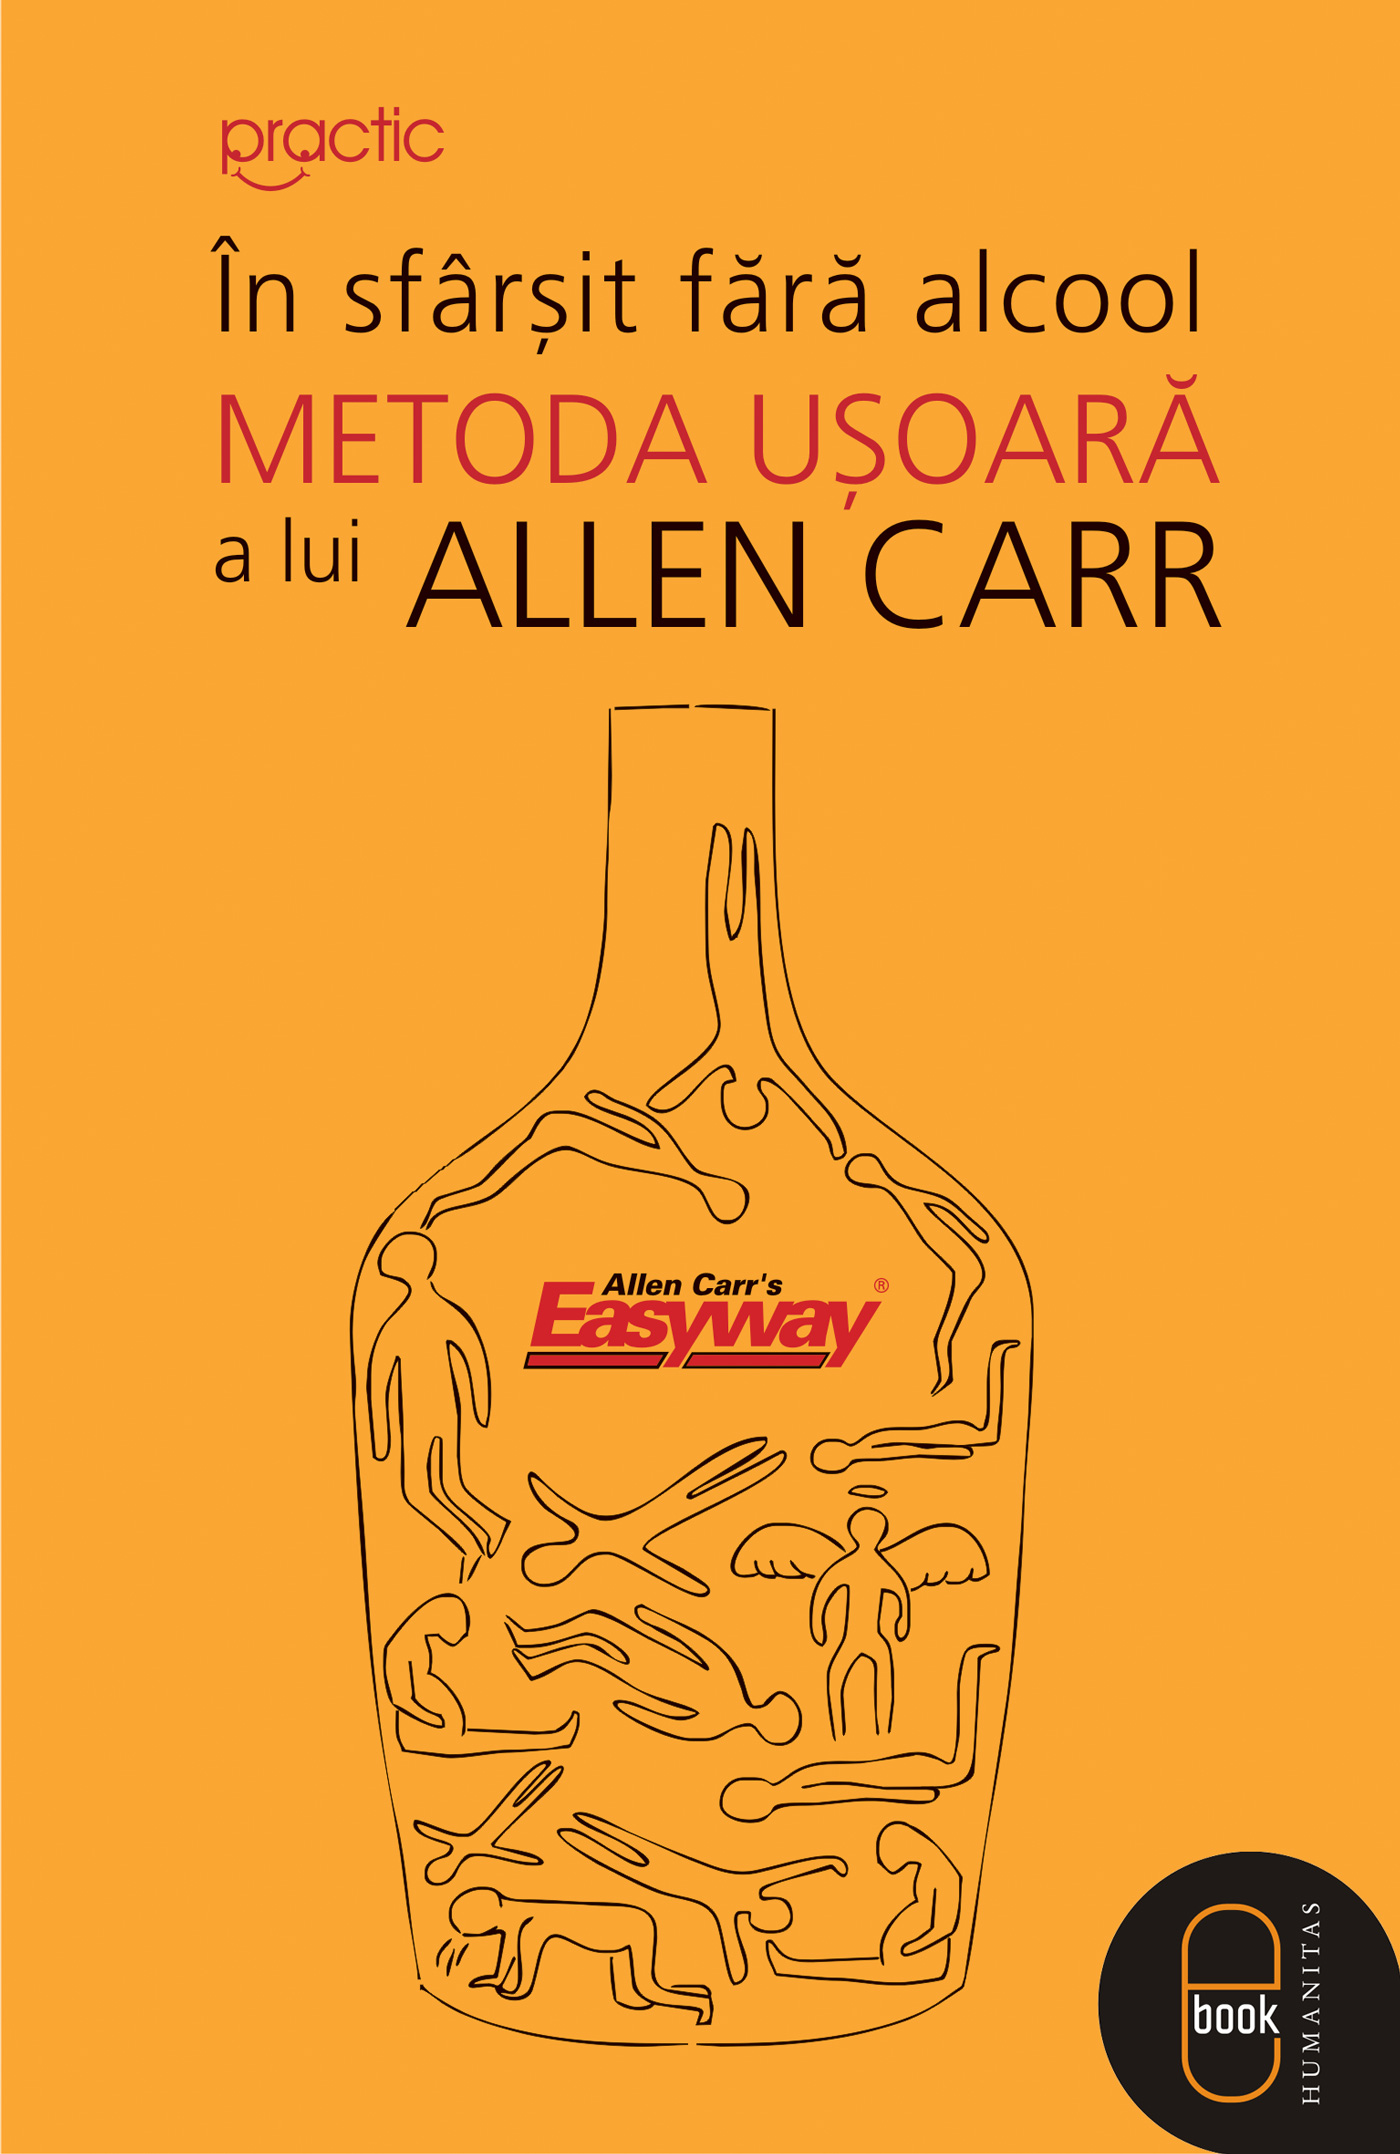 In sfarsit fara alcool: Metoda usoara a lui Allen Carr (ebook)